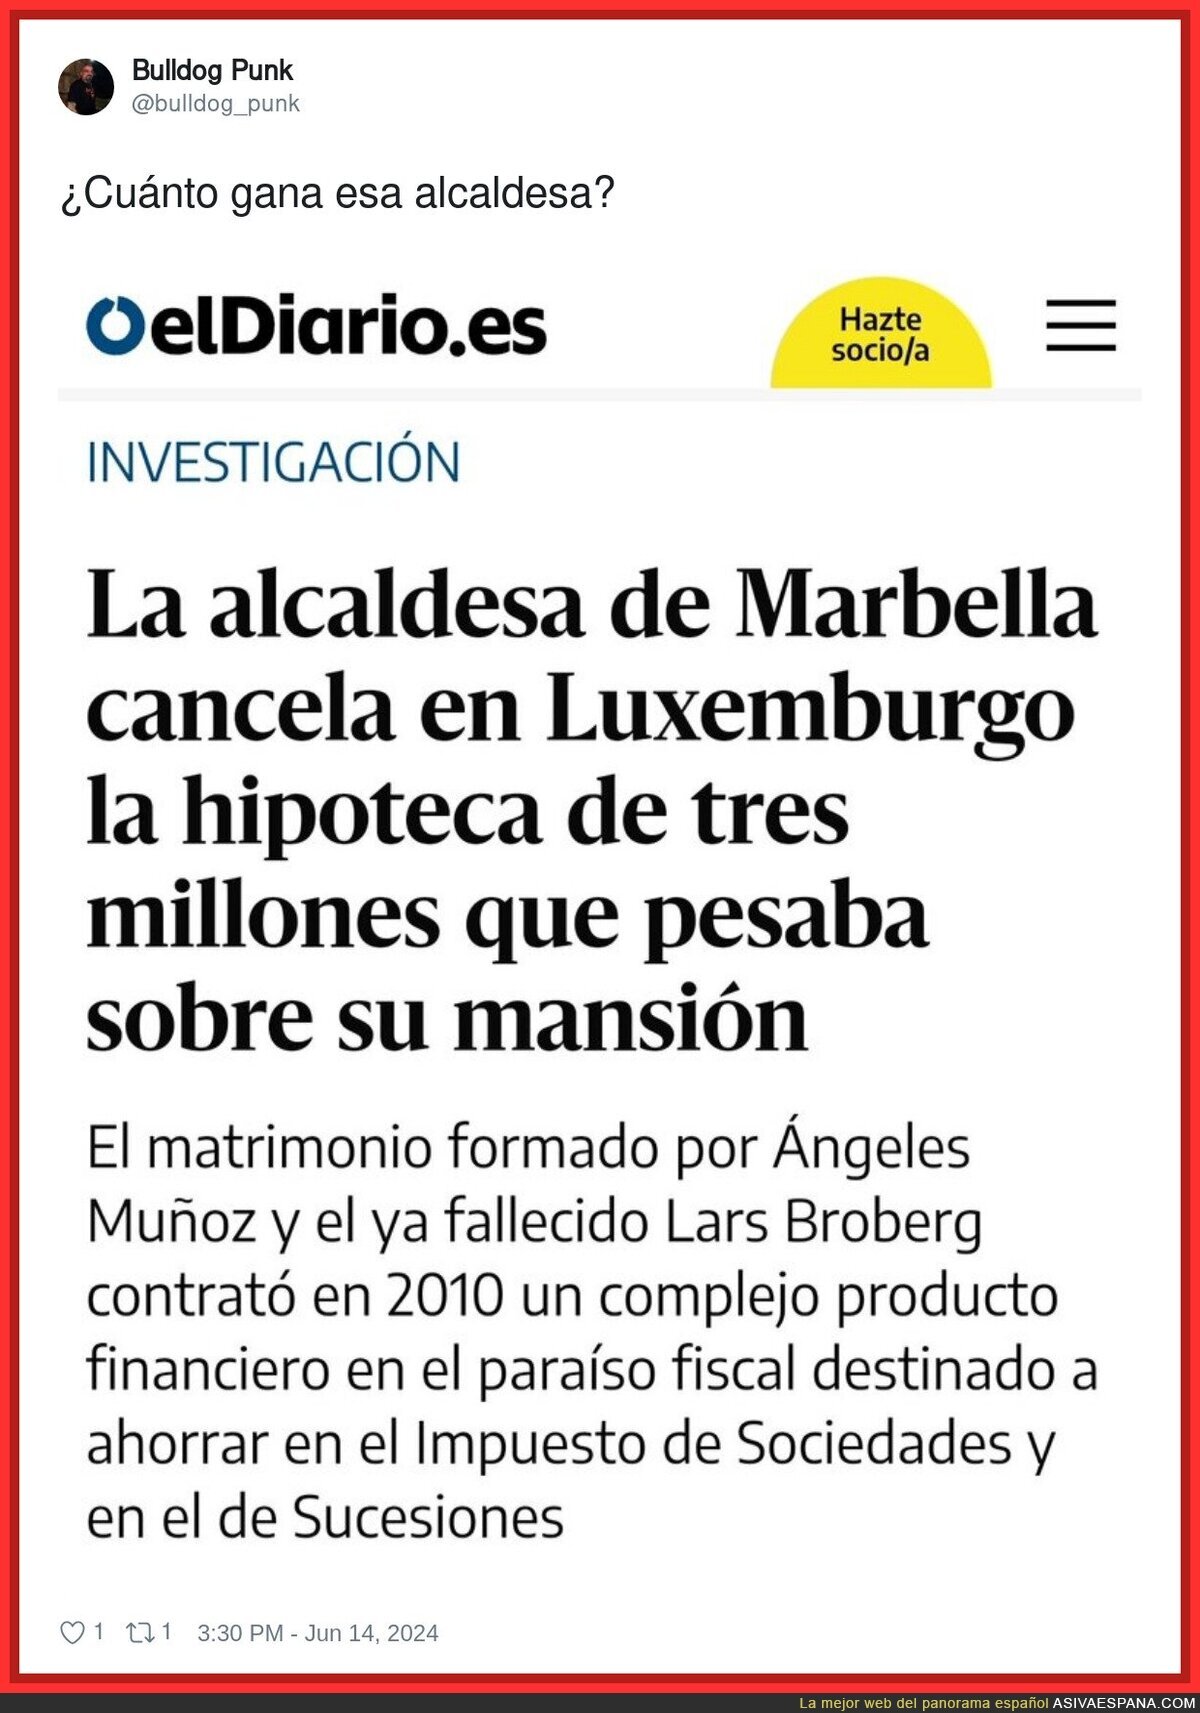 Las tremendas ganancias sospechosas de la alcaldesa de Marbella